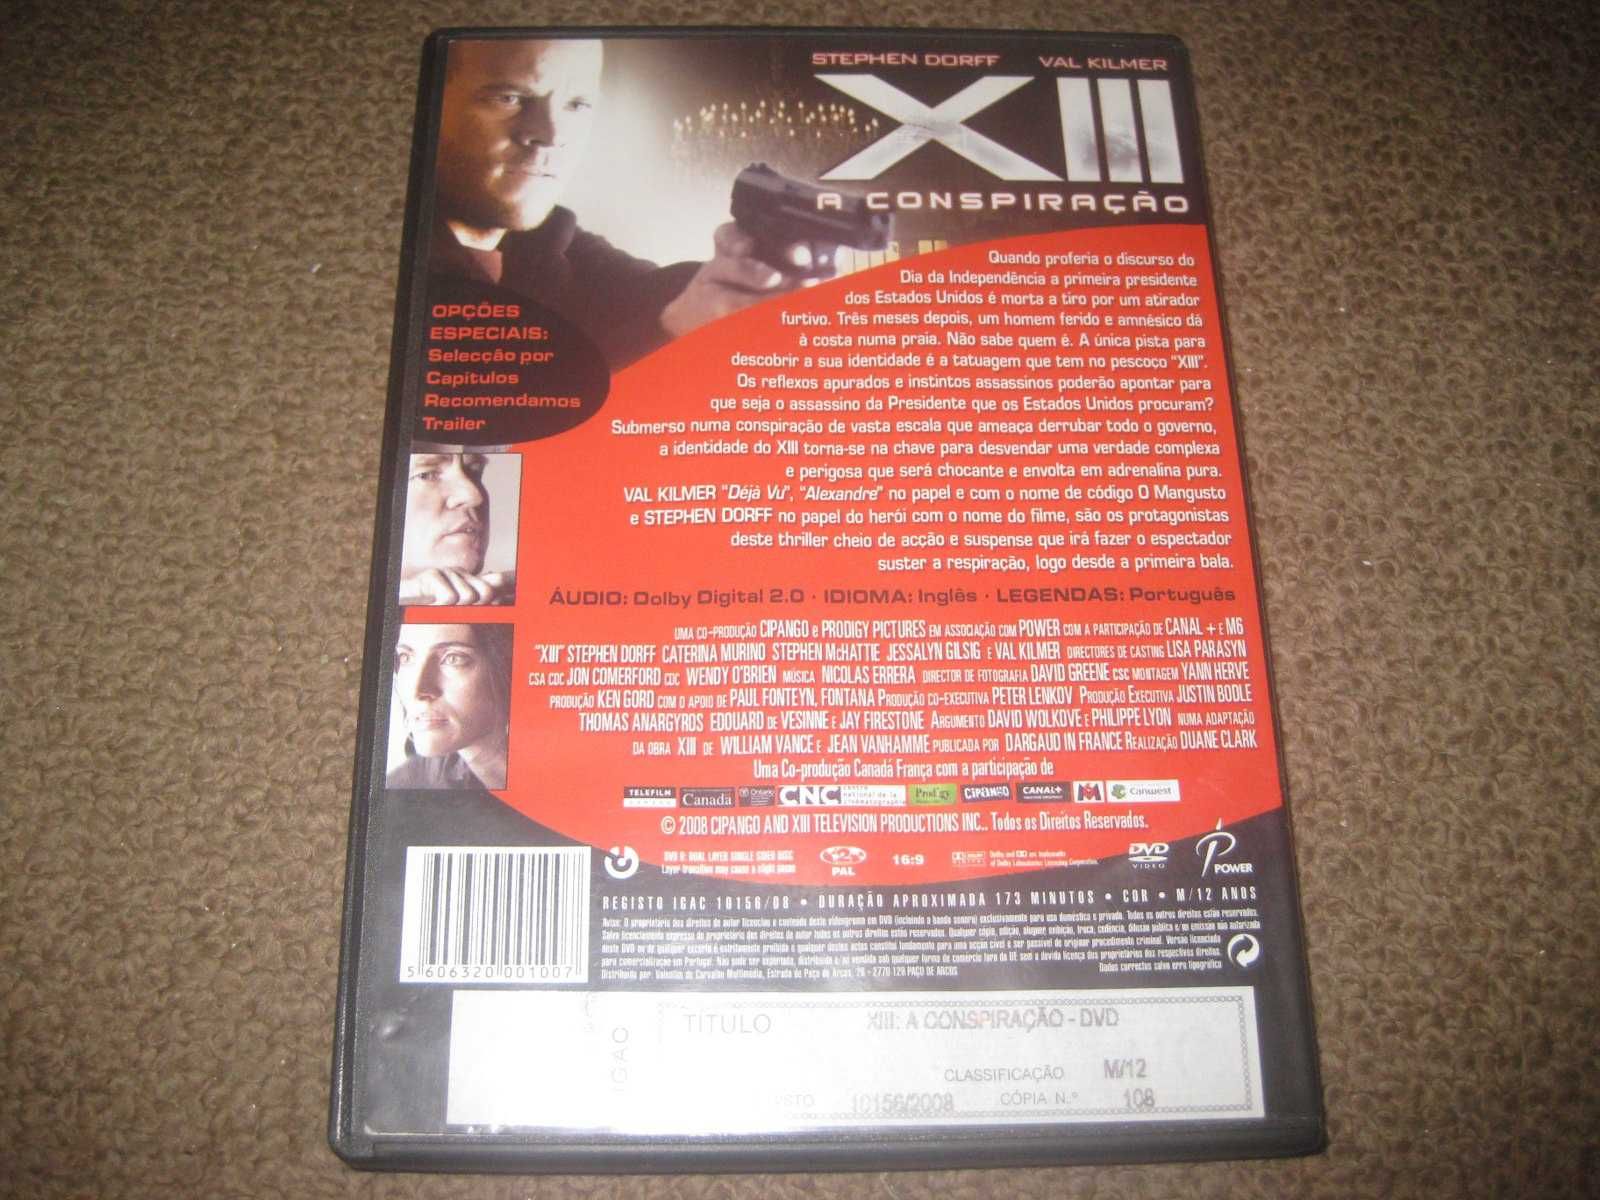 DVD "XIII: A Conspiração" com Val Kilmer